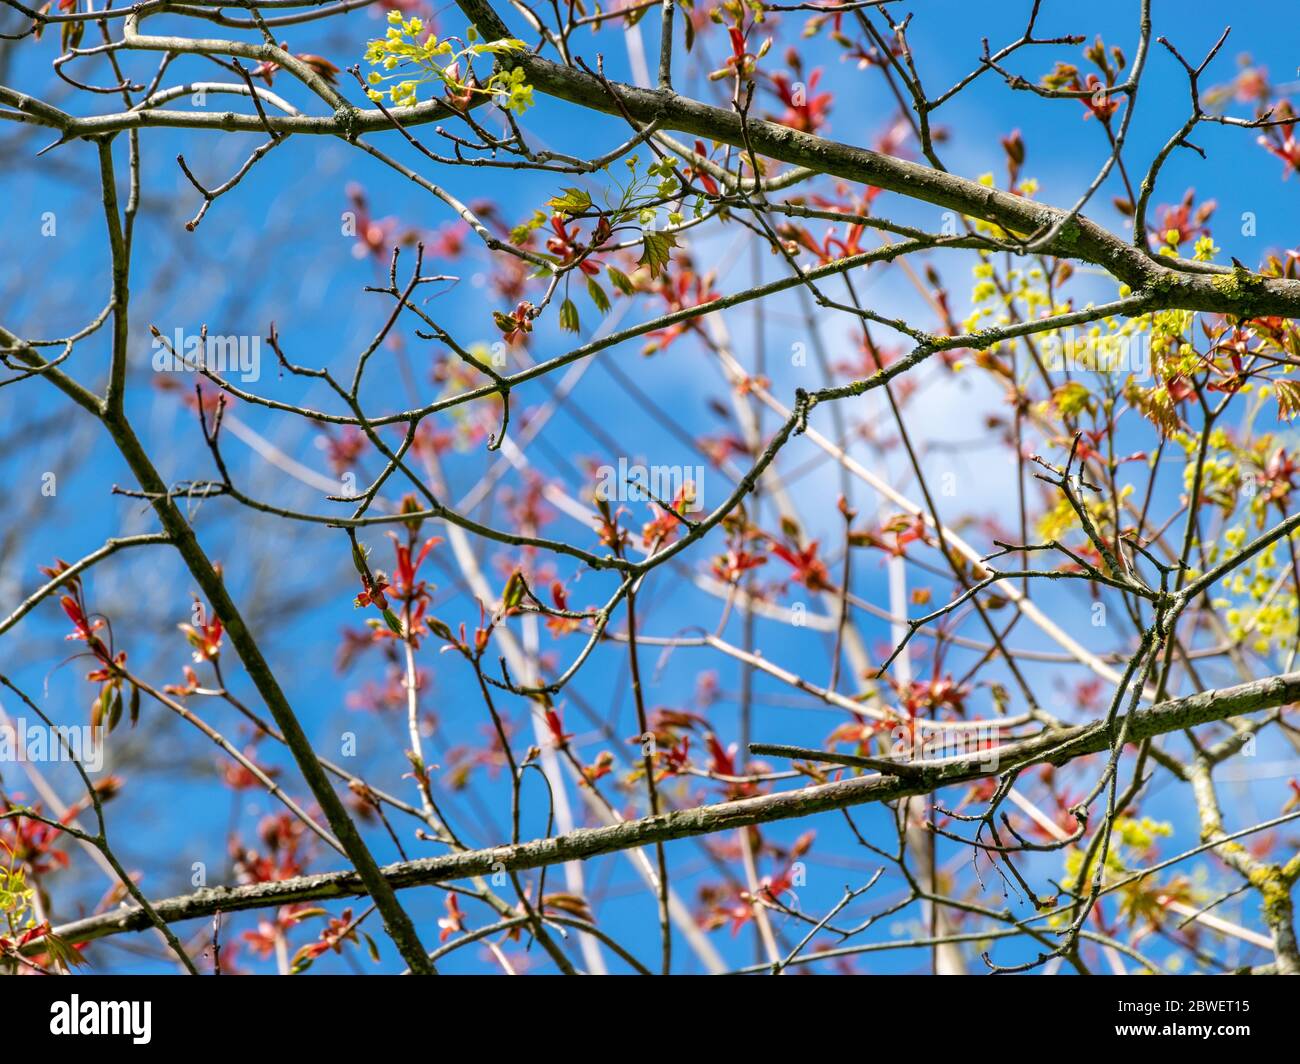 Bild mit ersten Blättern und Knospen an einem sonnigen Frühlingstag gedeiht in der Natur alles grün Stockfoto